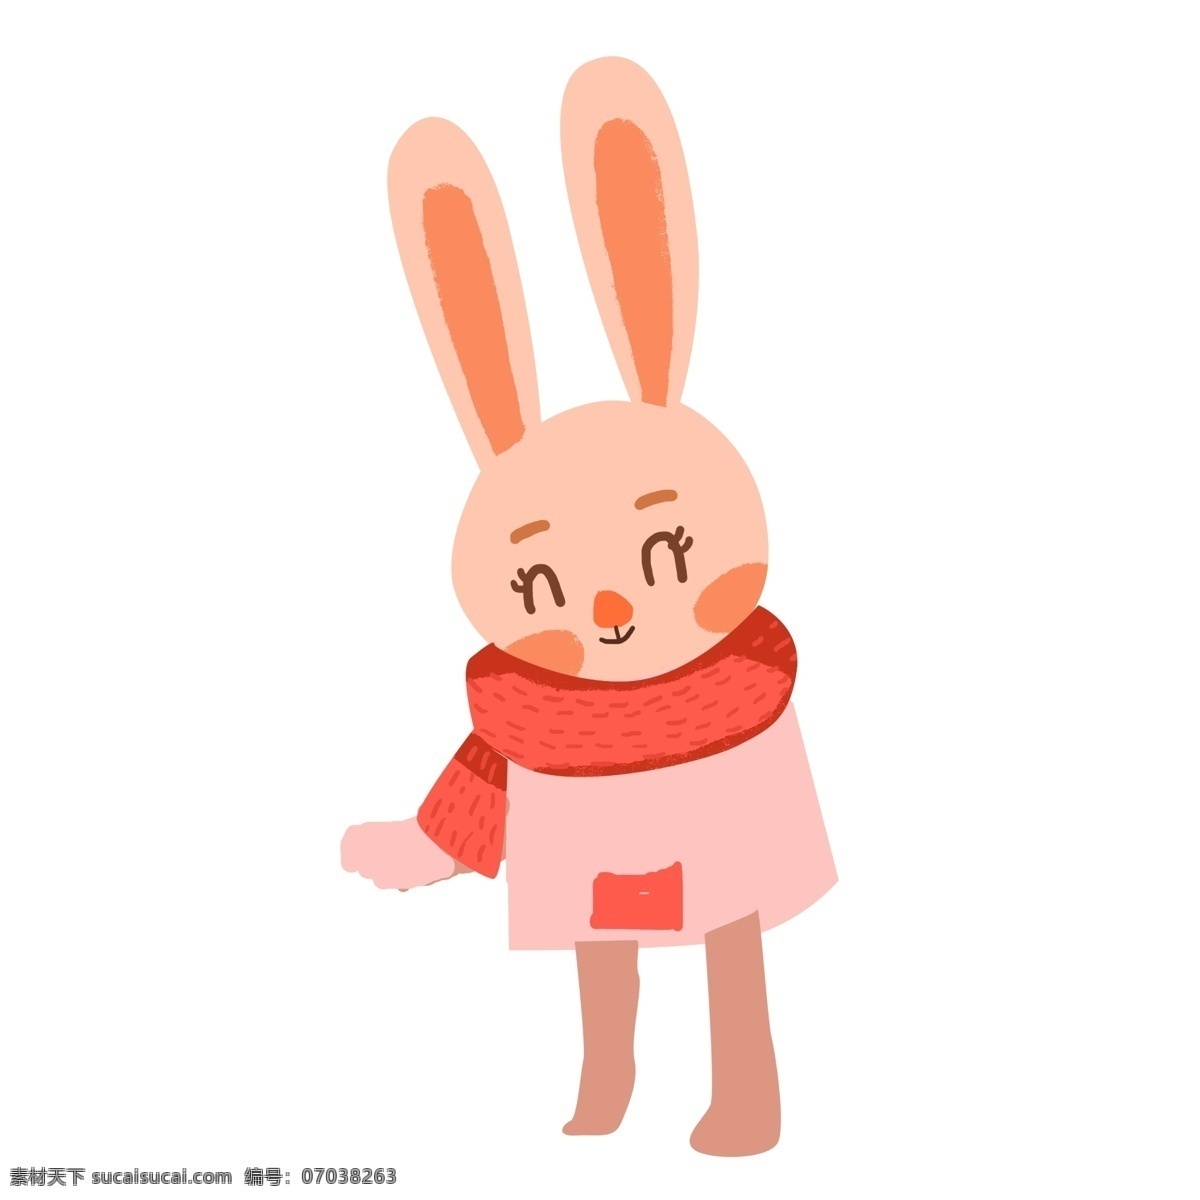 手绘 可爱 乖乖 小 兔子 原创 元素 动物 绘画 设计元素 粉色 原创元素